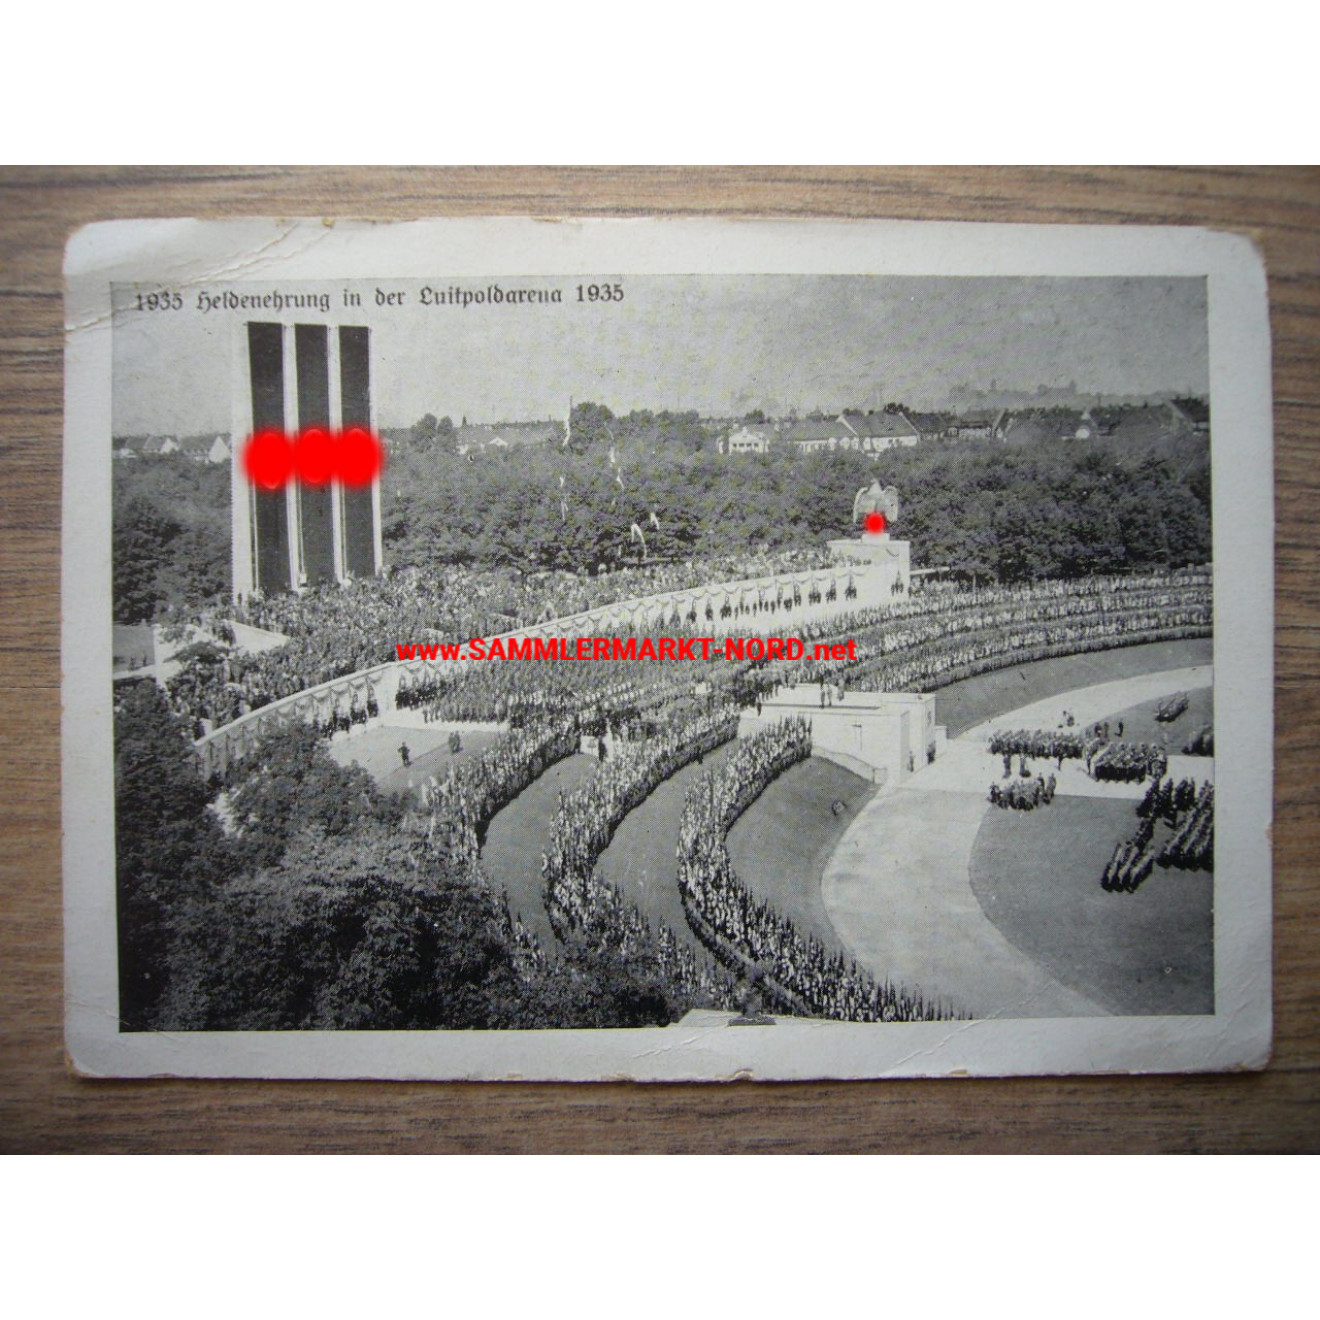 Nürnberg - Heldenehrung in der Luitpoldarena 1938 - Postkarte